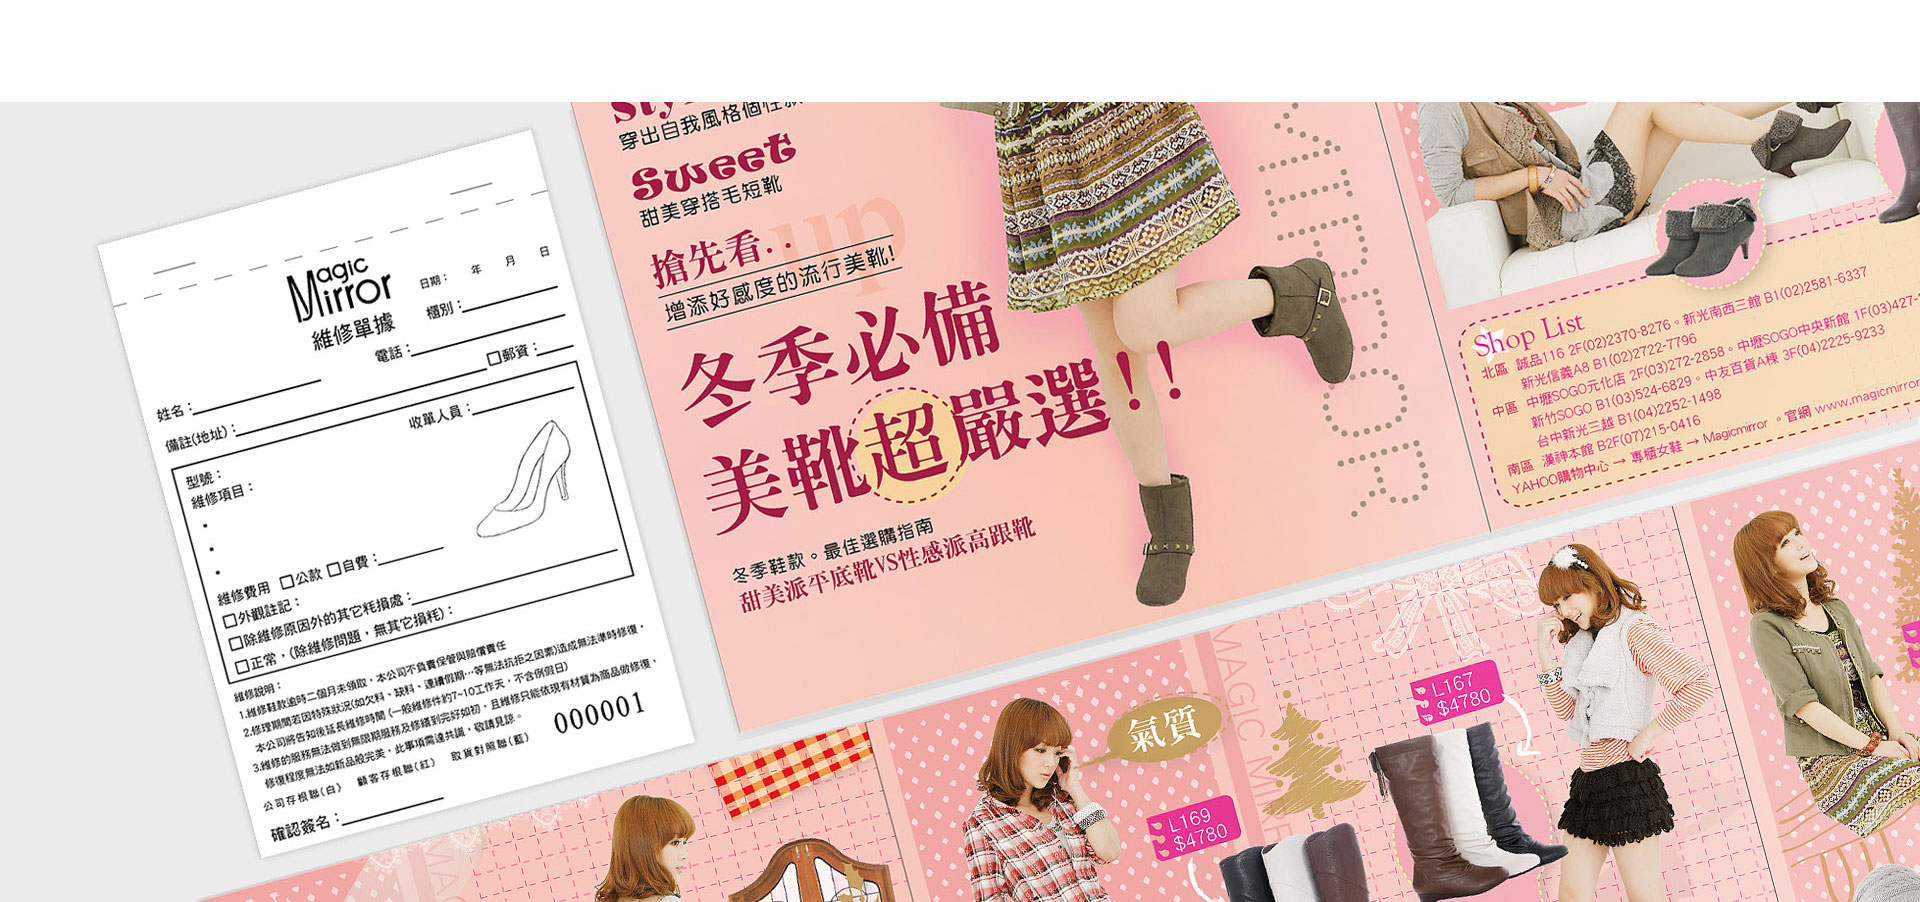 女鞋產品廣告目錄設計案例